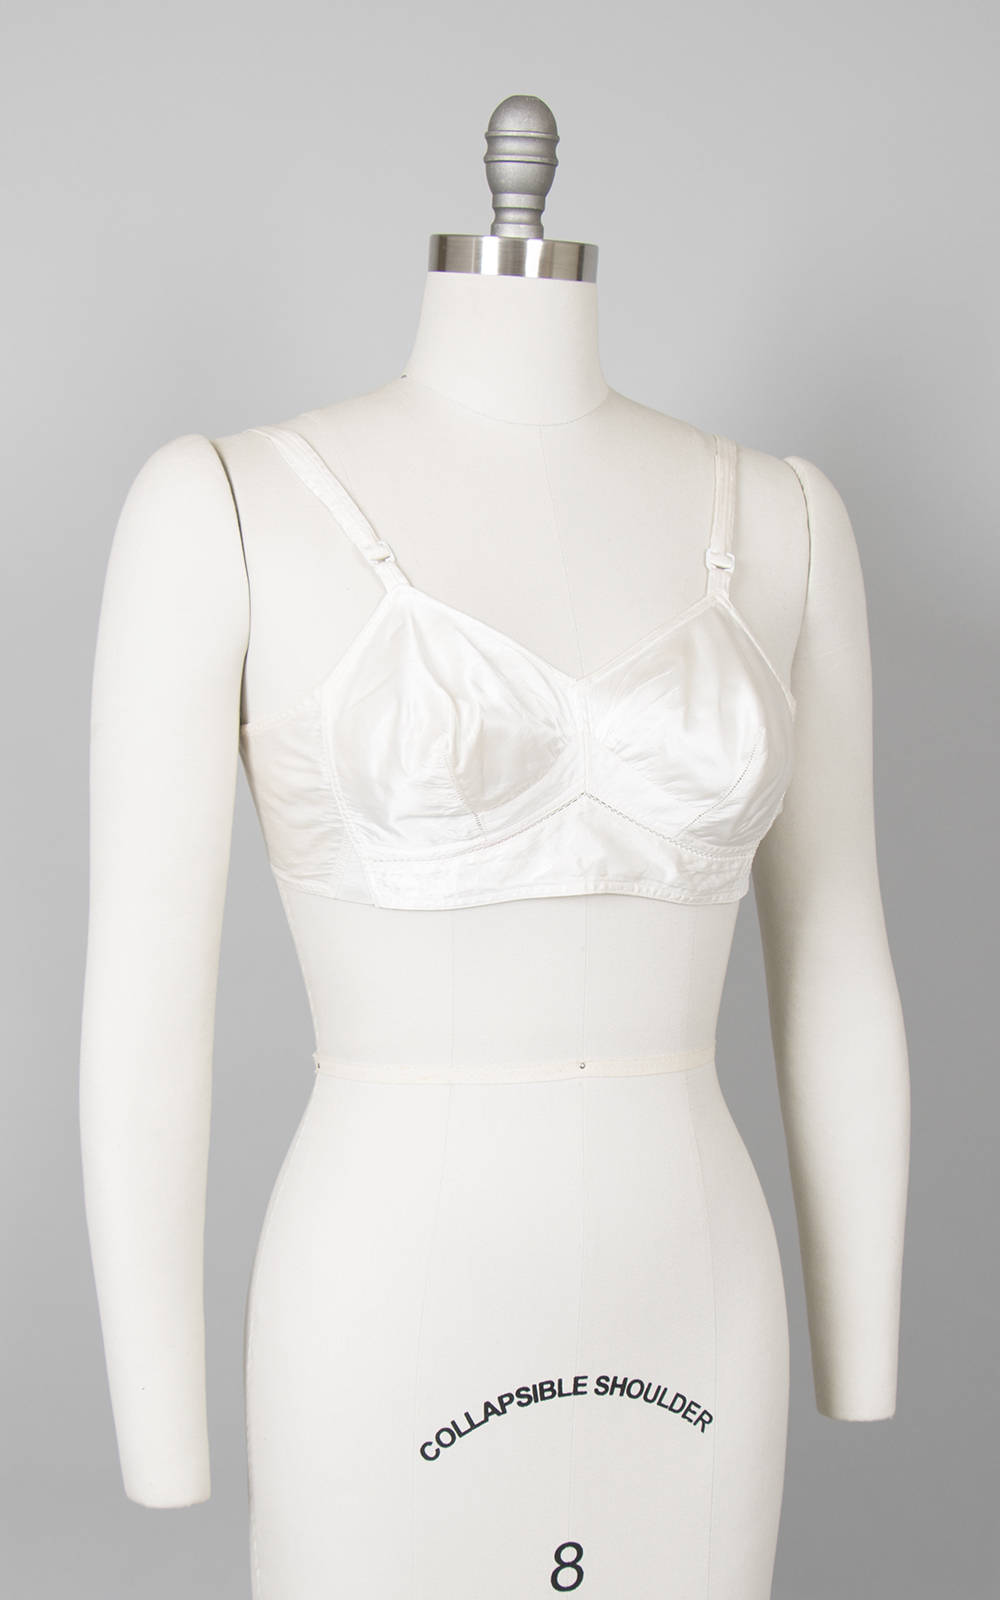 Vintage Exquisite Form White Cotton Bra P502 Size 40B, 1950s -  Canada